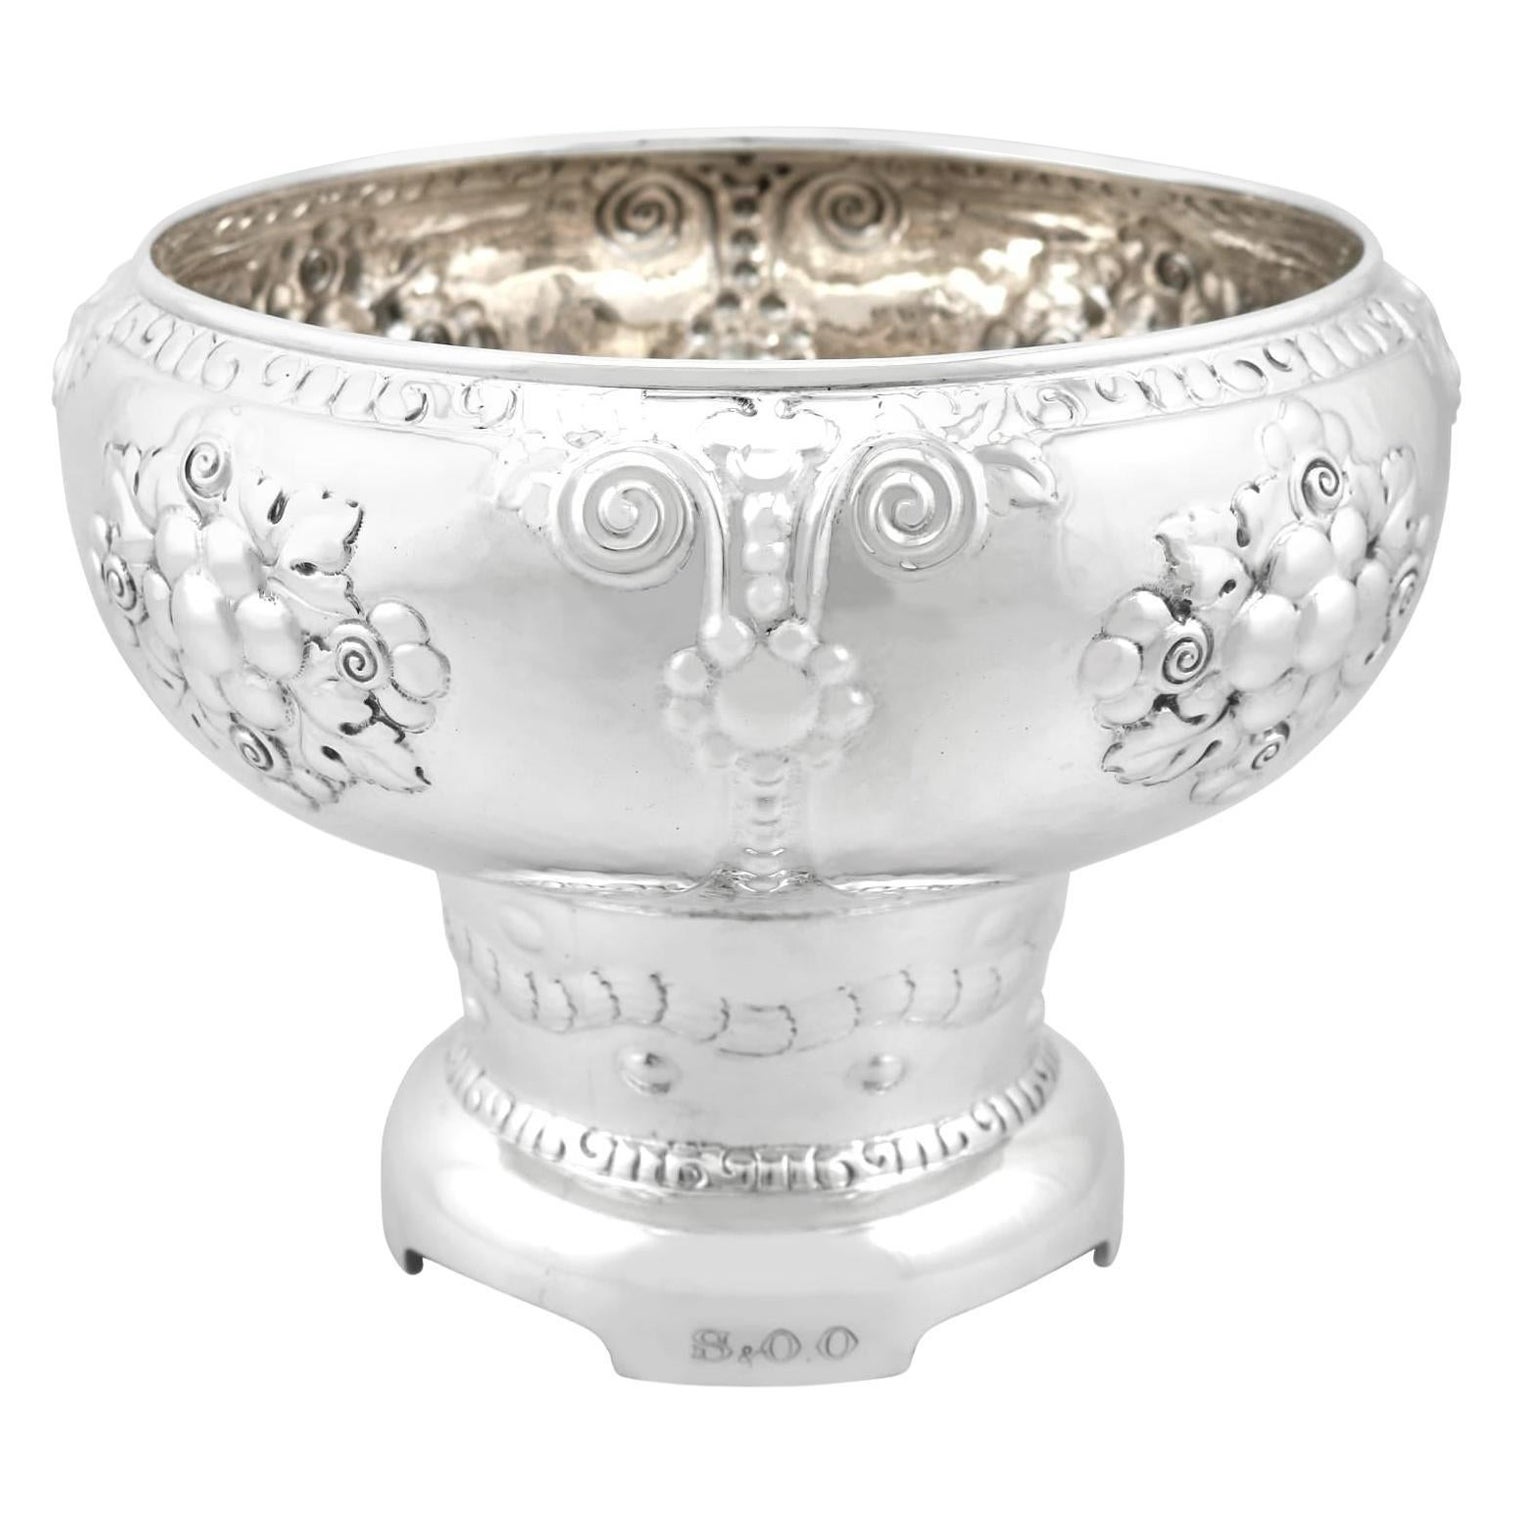 Magnus Aase Antique Norwegian Silver Presentation Bowl For Sale